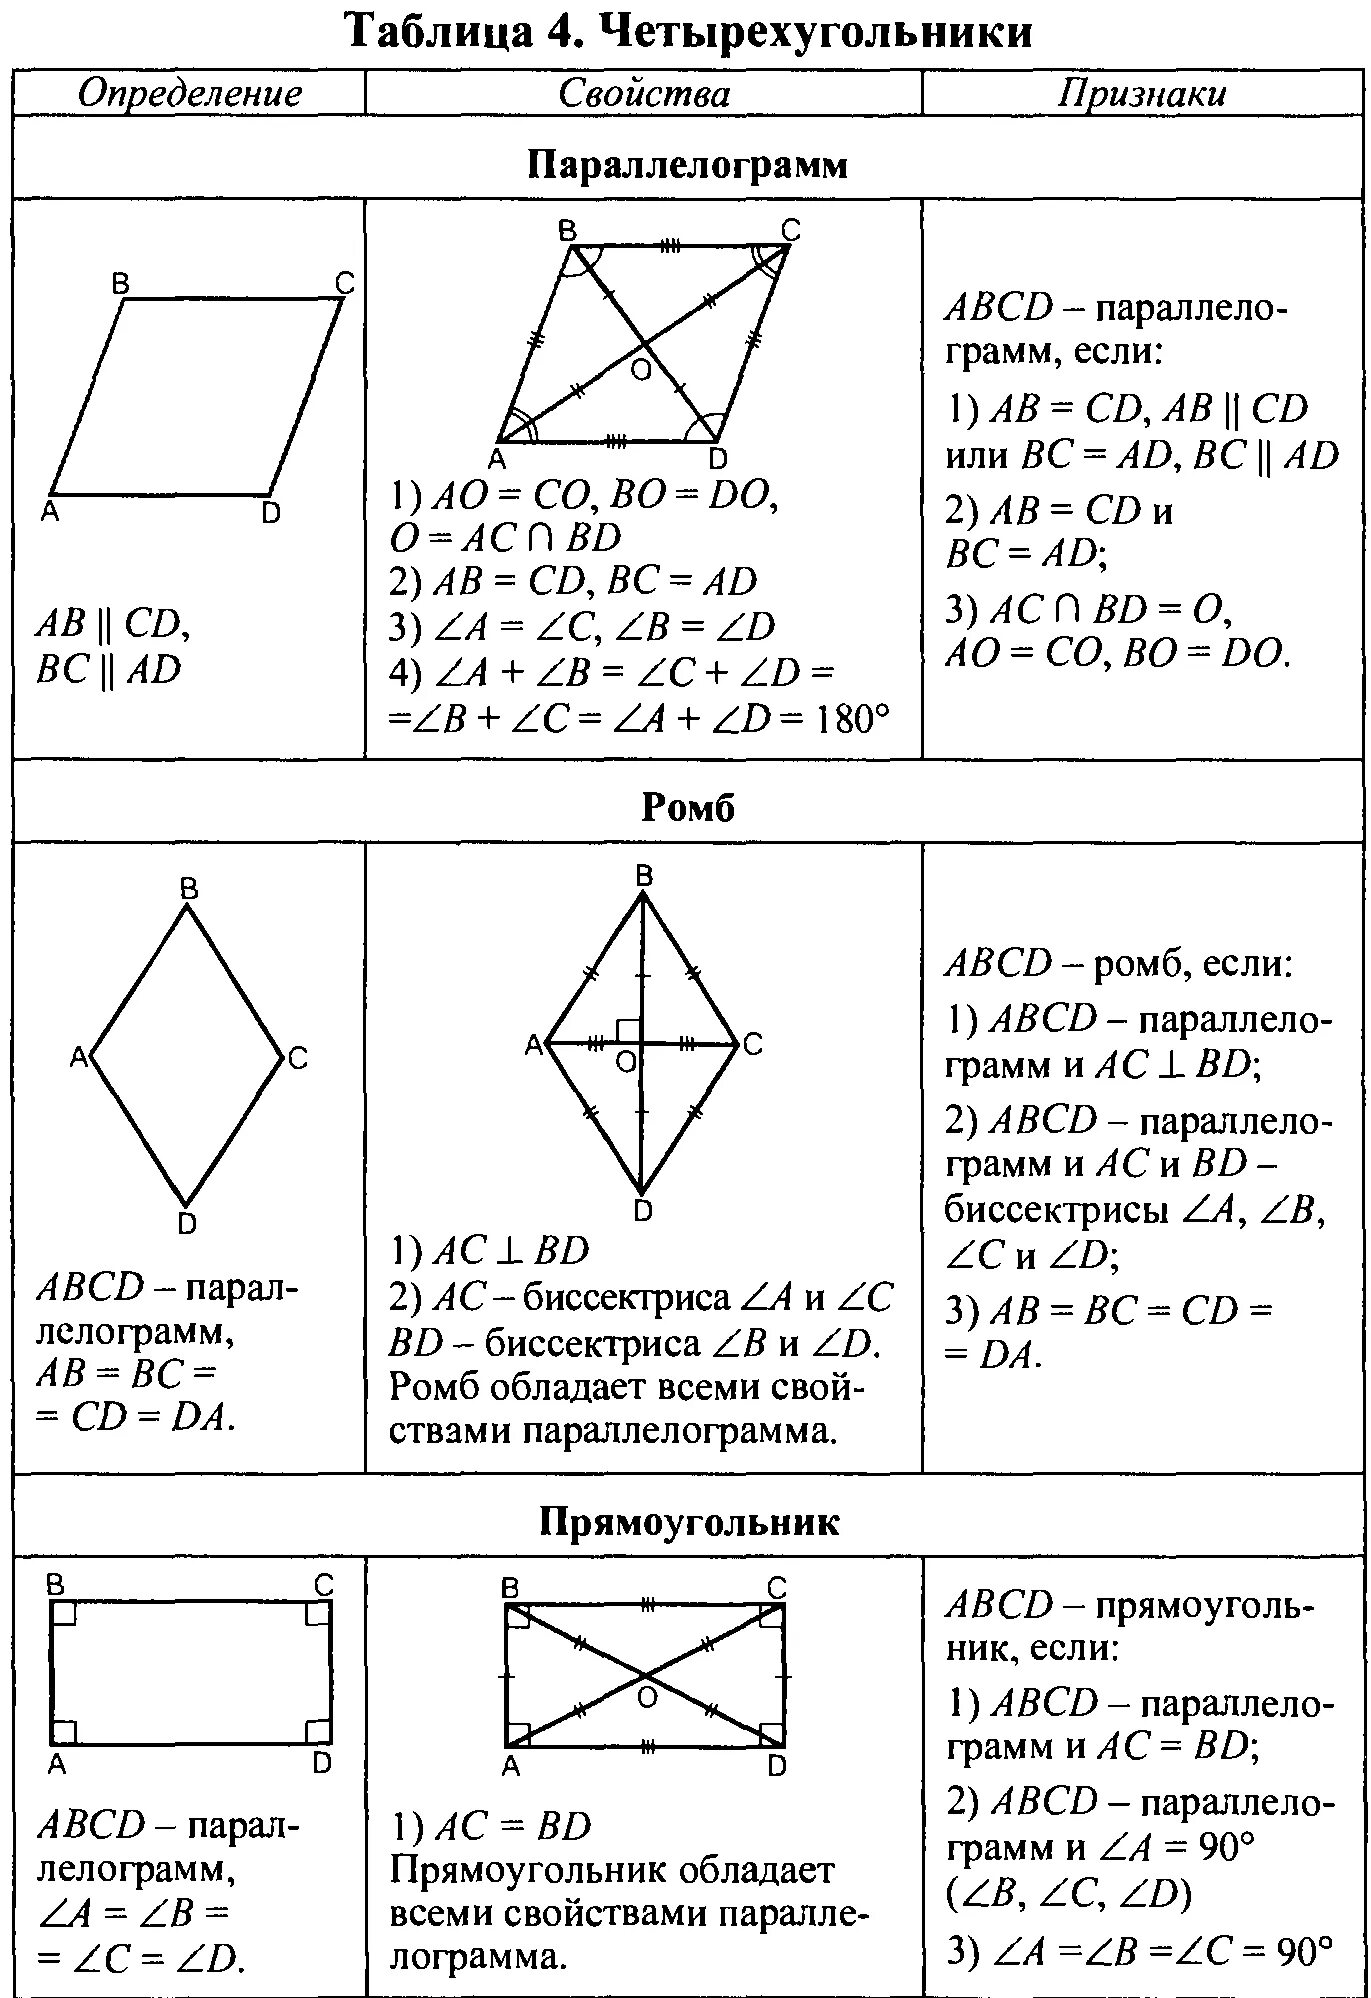 Конспект урока по геометрии 8 класс. Шпаргалка Четырехугольники геометрия 9 класс. Шпаргалка 9 класс по геометрии шпаргалка. Таблица по геометрии 8 класс Четырехугольники. Геометрия 7-9 класс в таблицах и схемах.